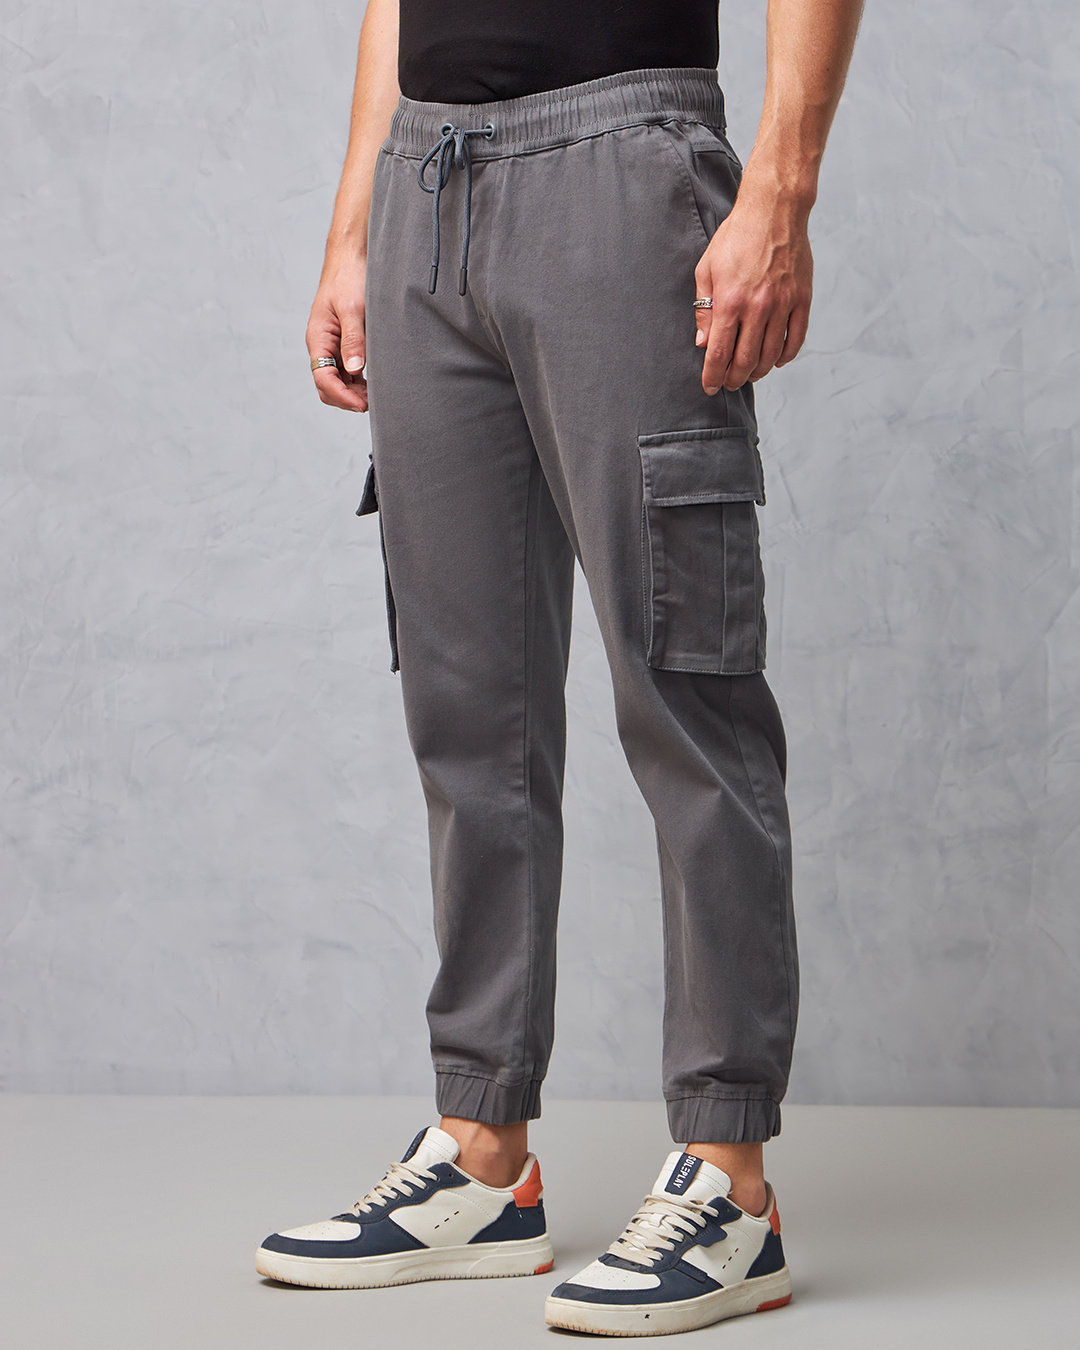 Buy Men's Grey Cargo Jogger Pants Online at Bewakoof